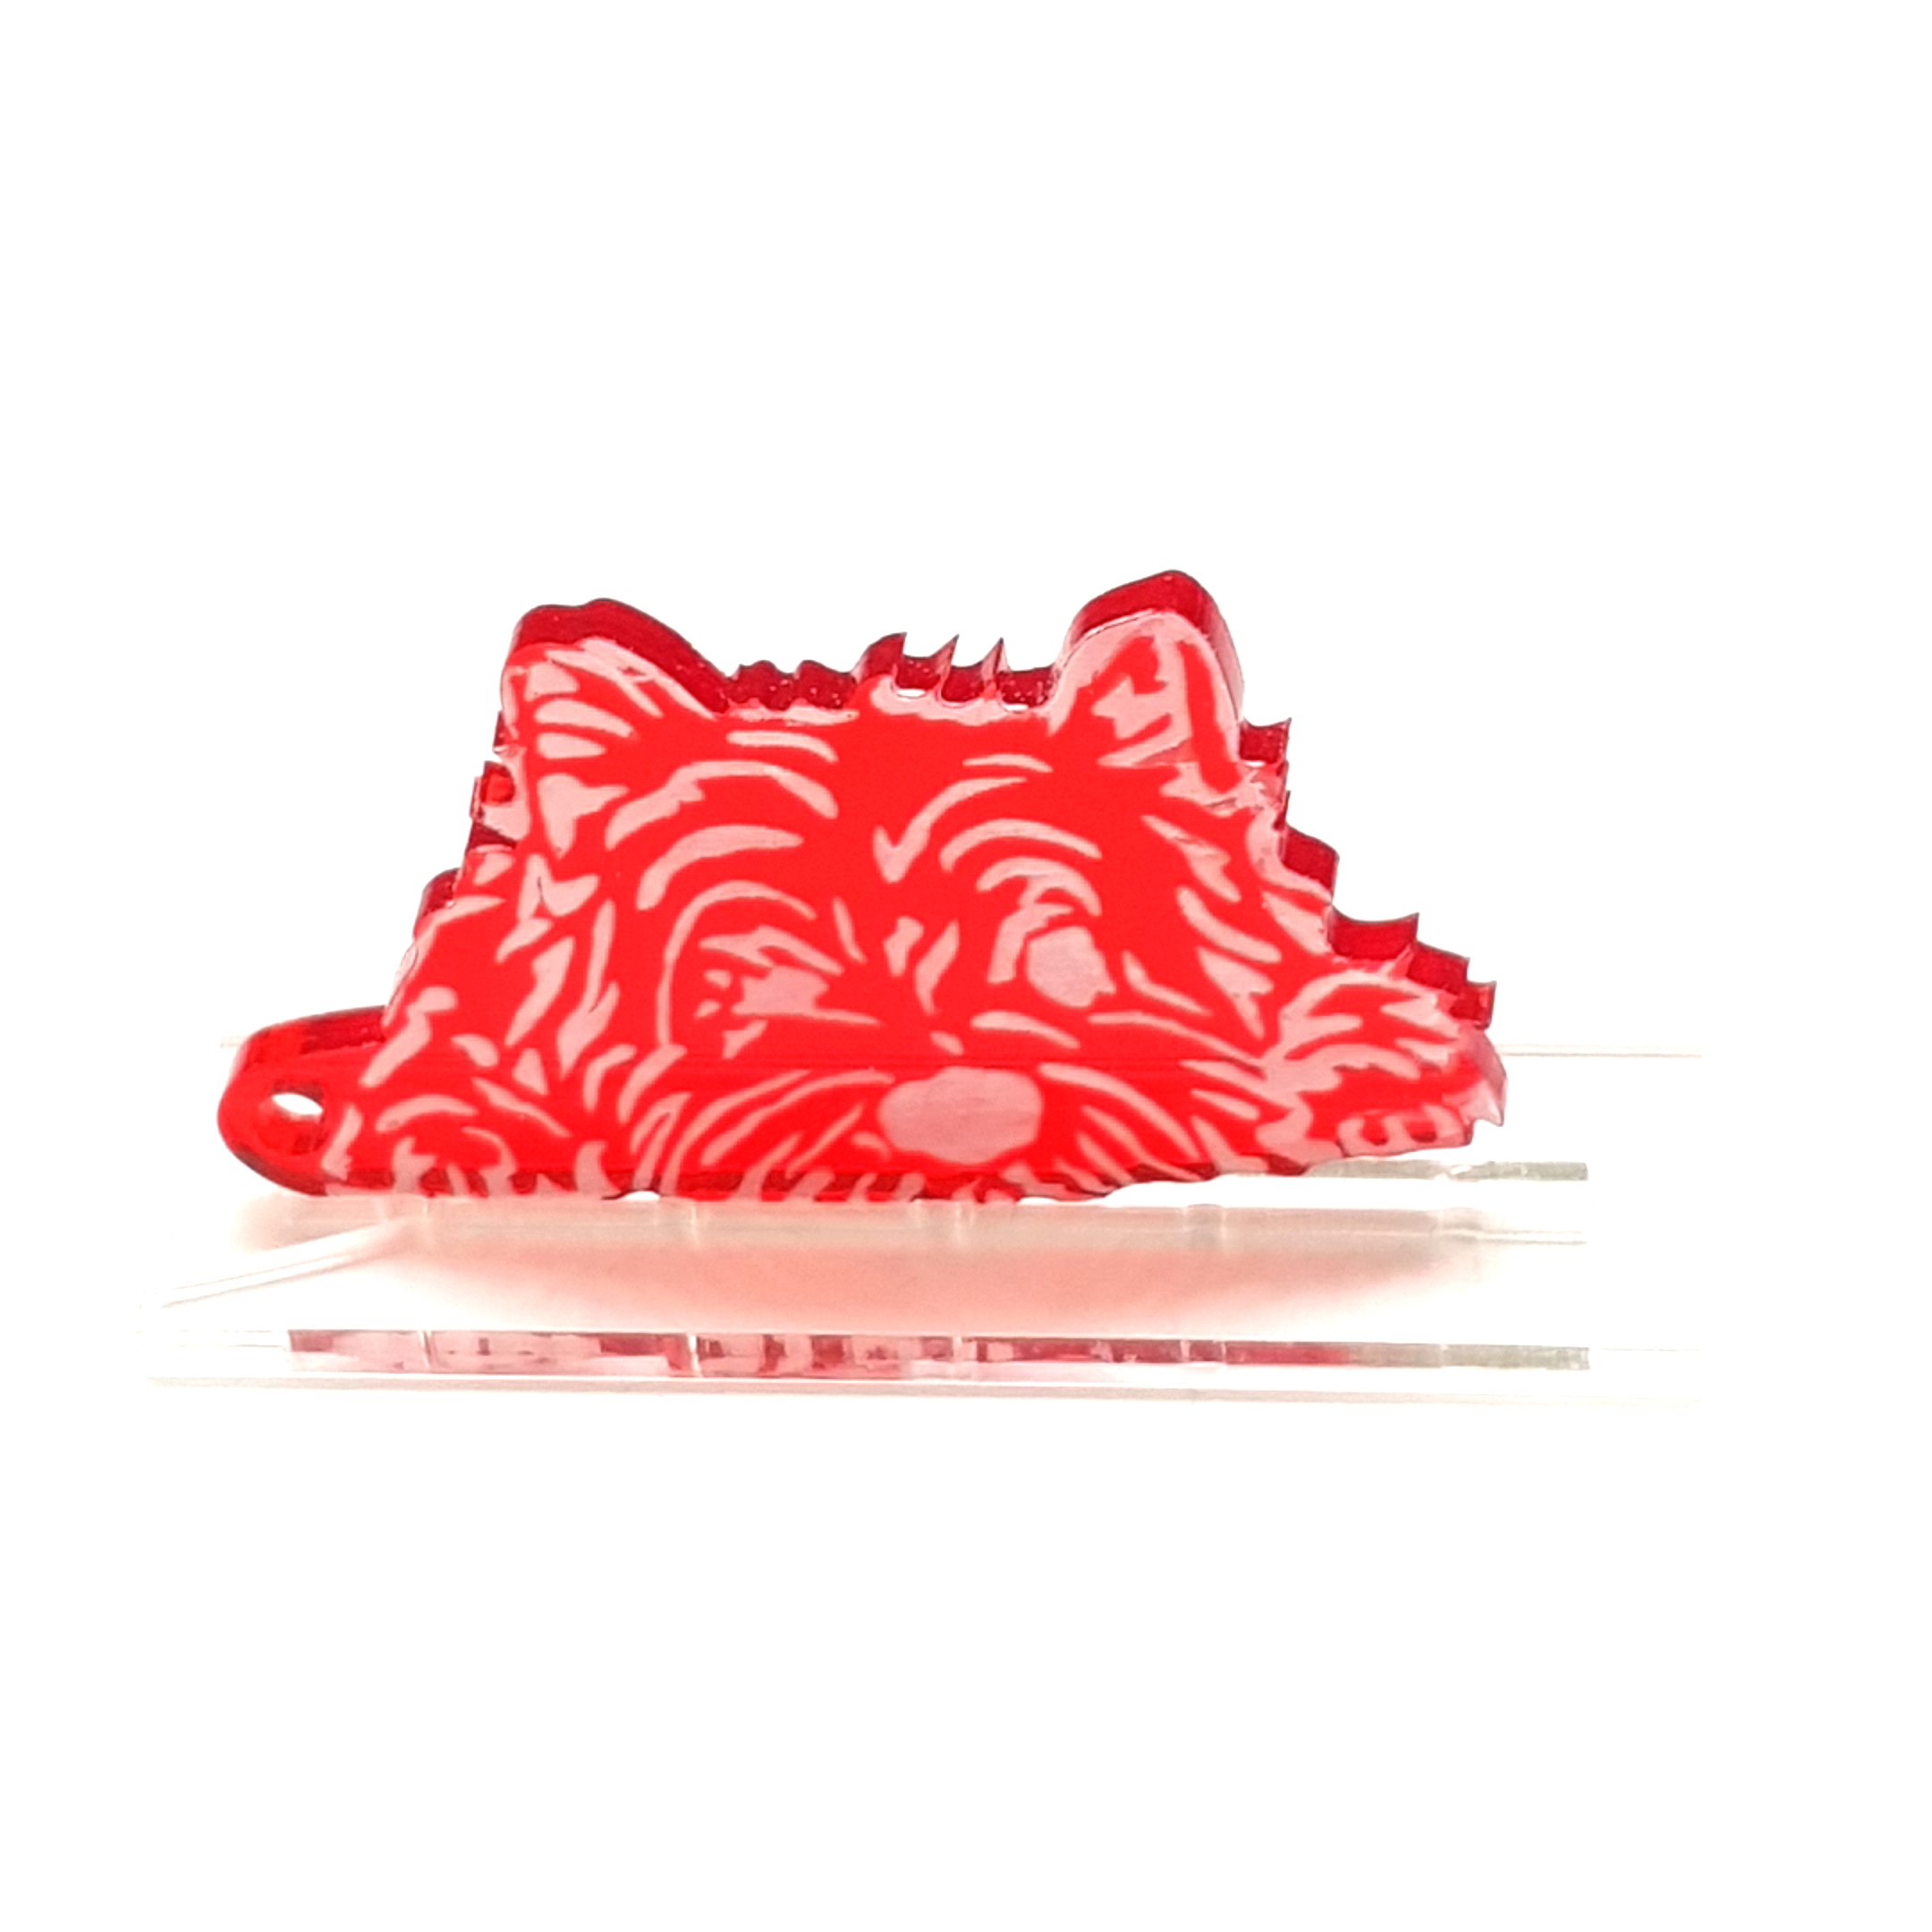 Westi, silouhette gravée sur cristal rouge